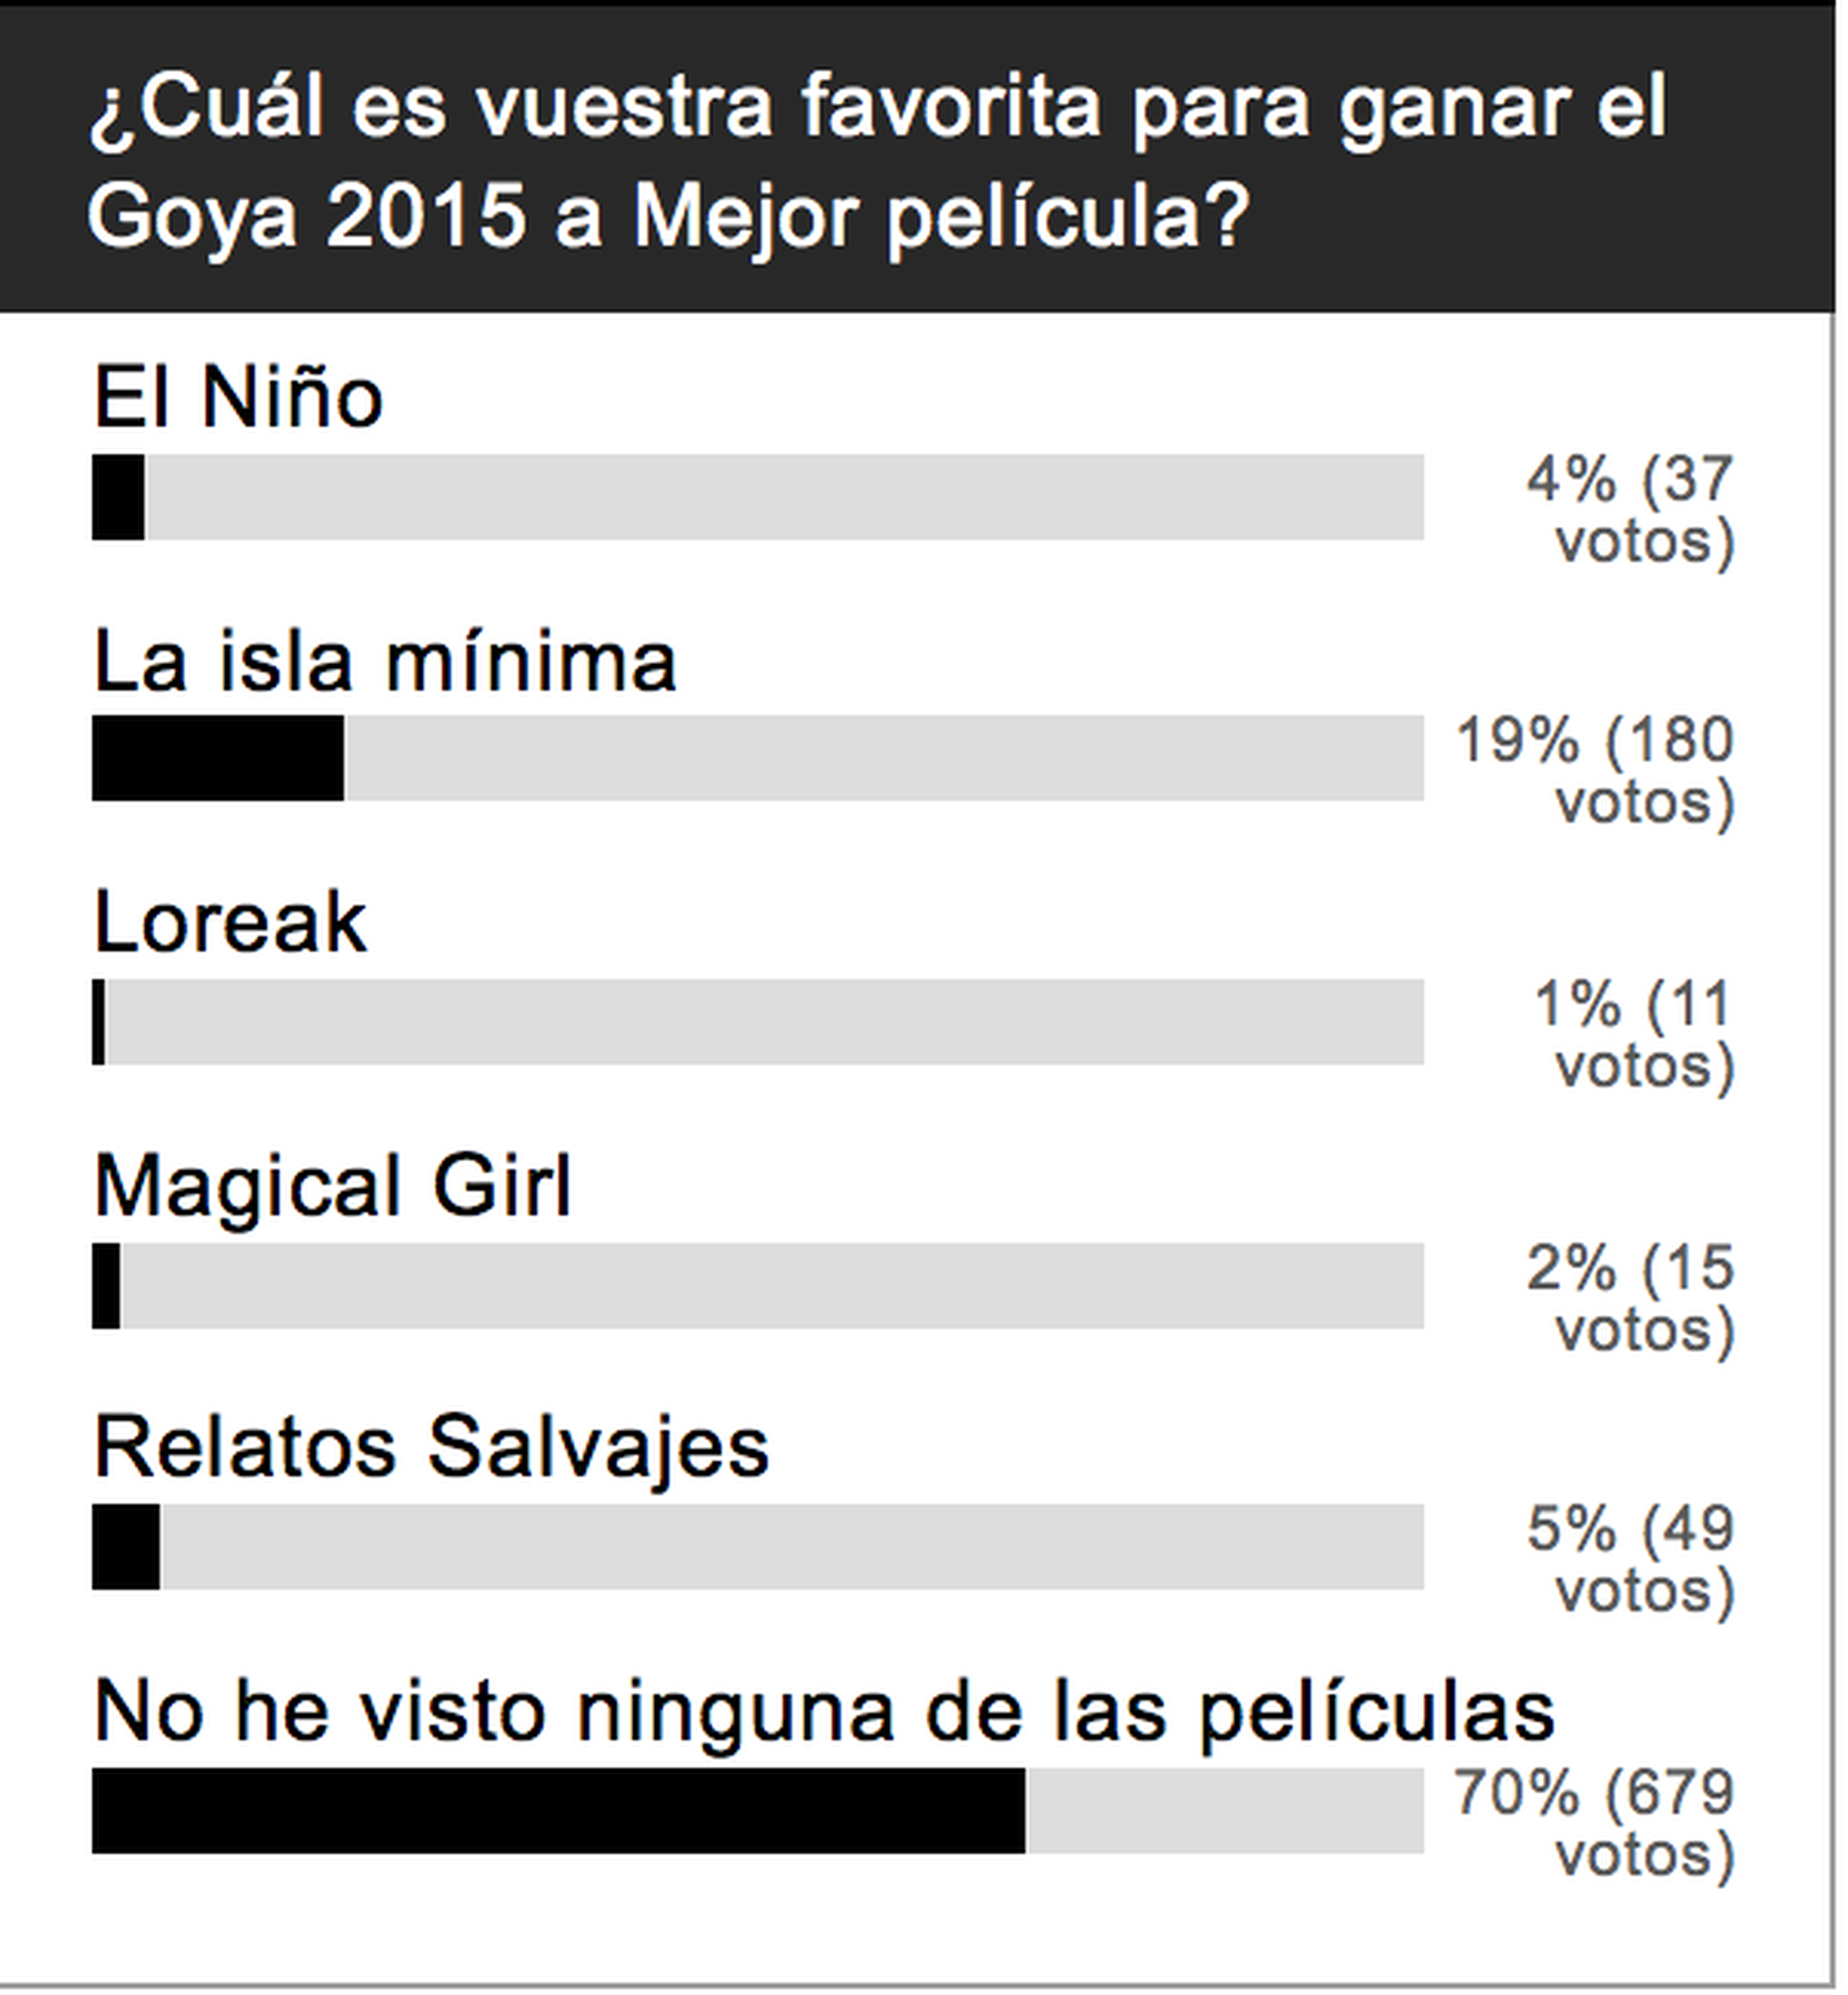 Resultado de encuesta: En los Goya 2015 ha ganado vuestra película favorita